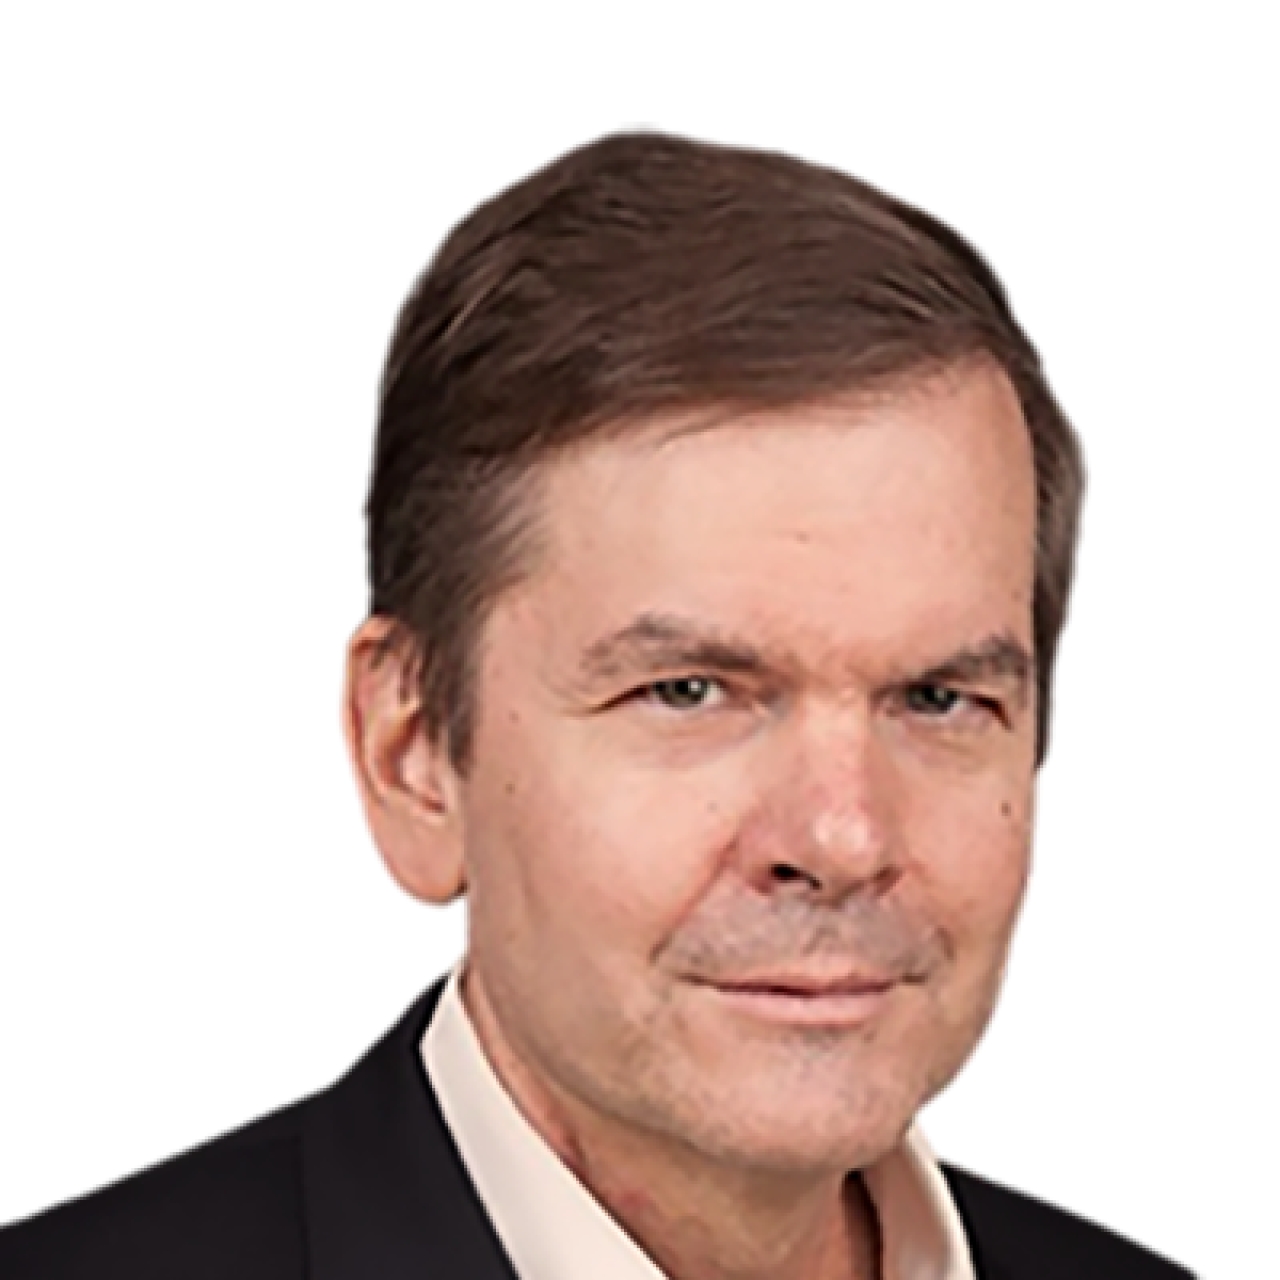 Jim Dildine Named as Sophos’ New CFO